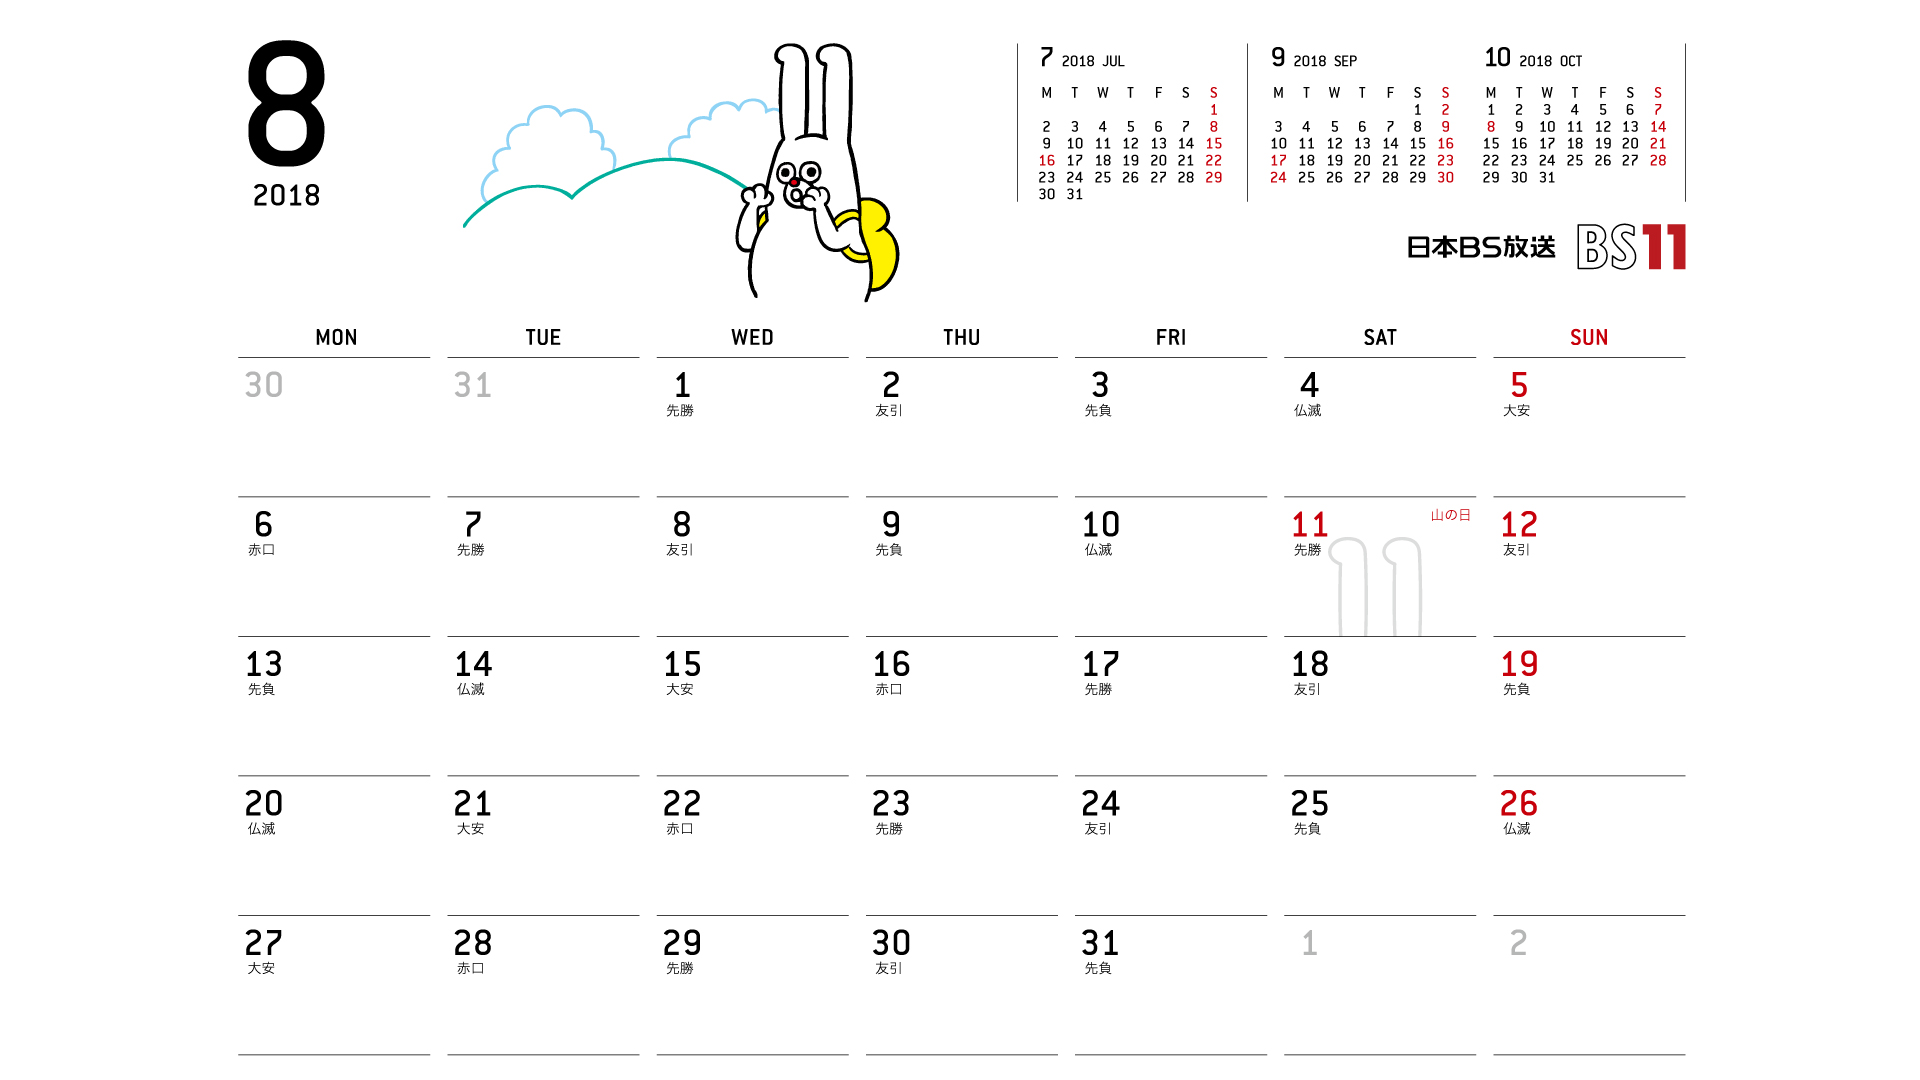 じゅういっちゃんのデジタルカレンダー18年08月 Bs11 イレブン いつでも無料放送